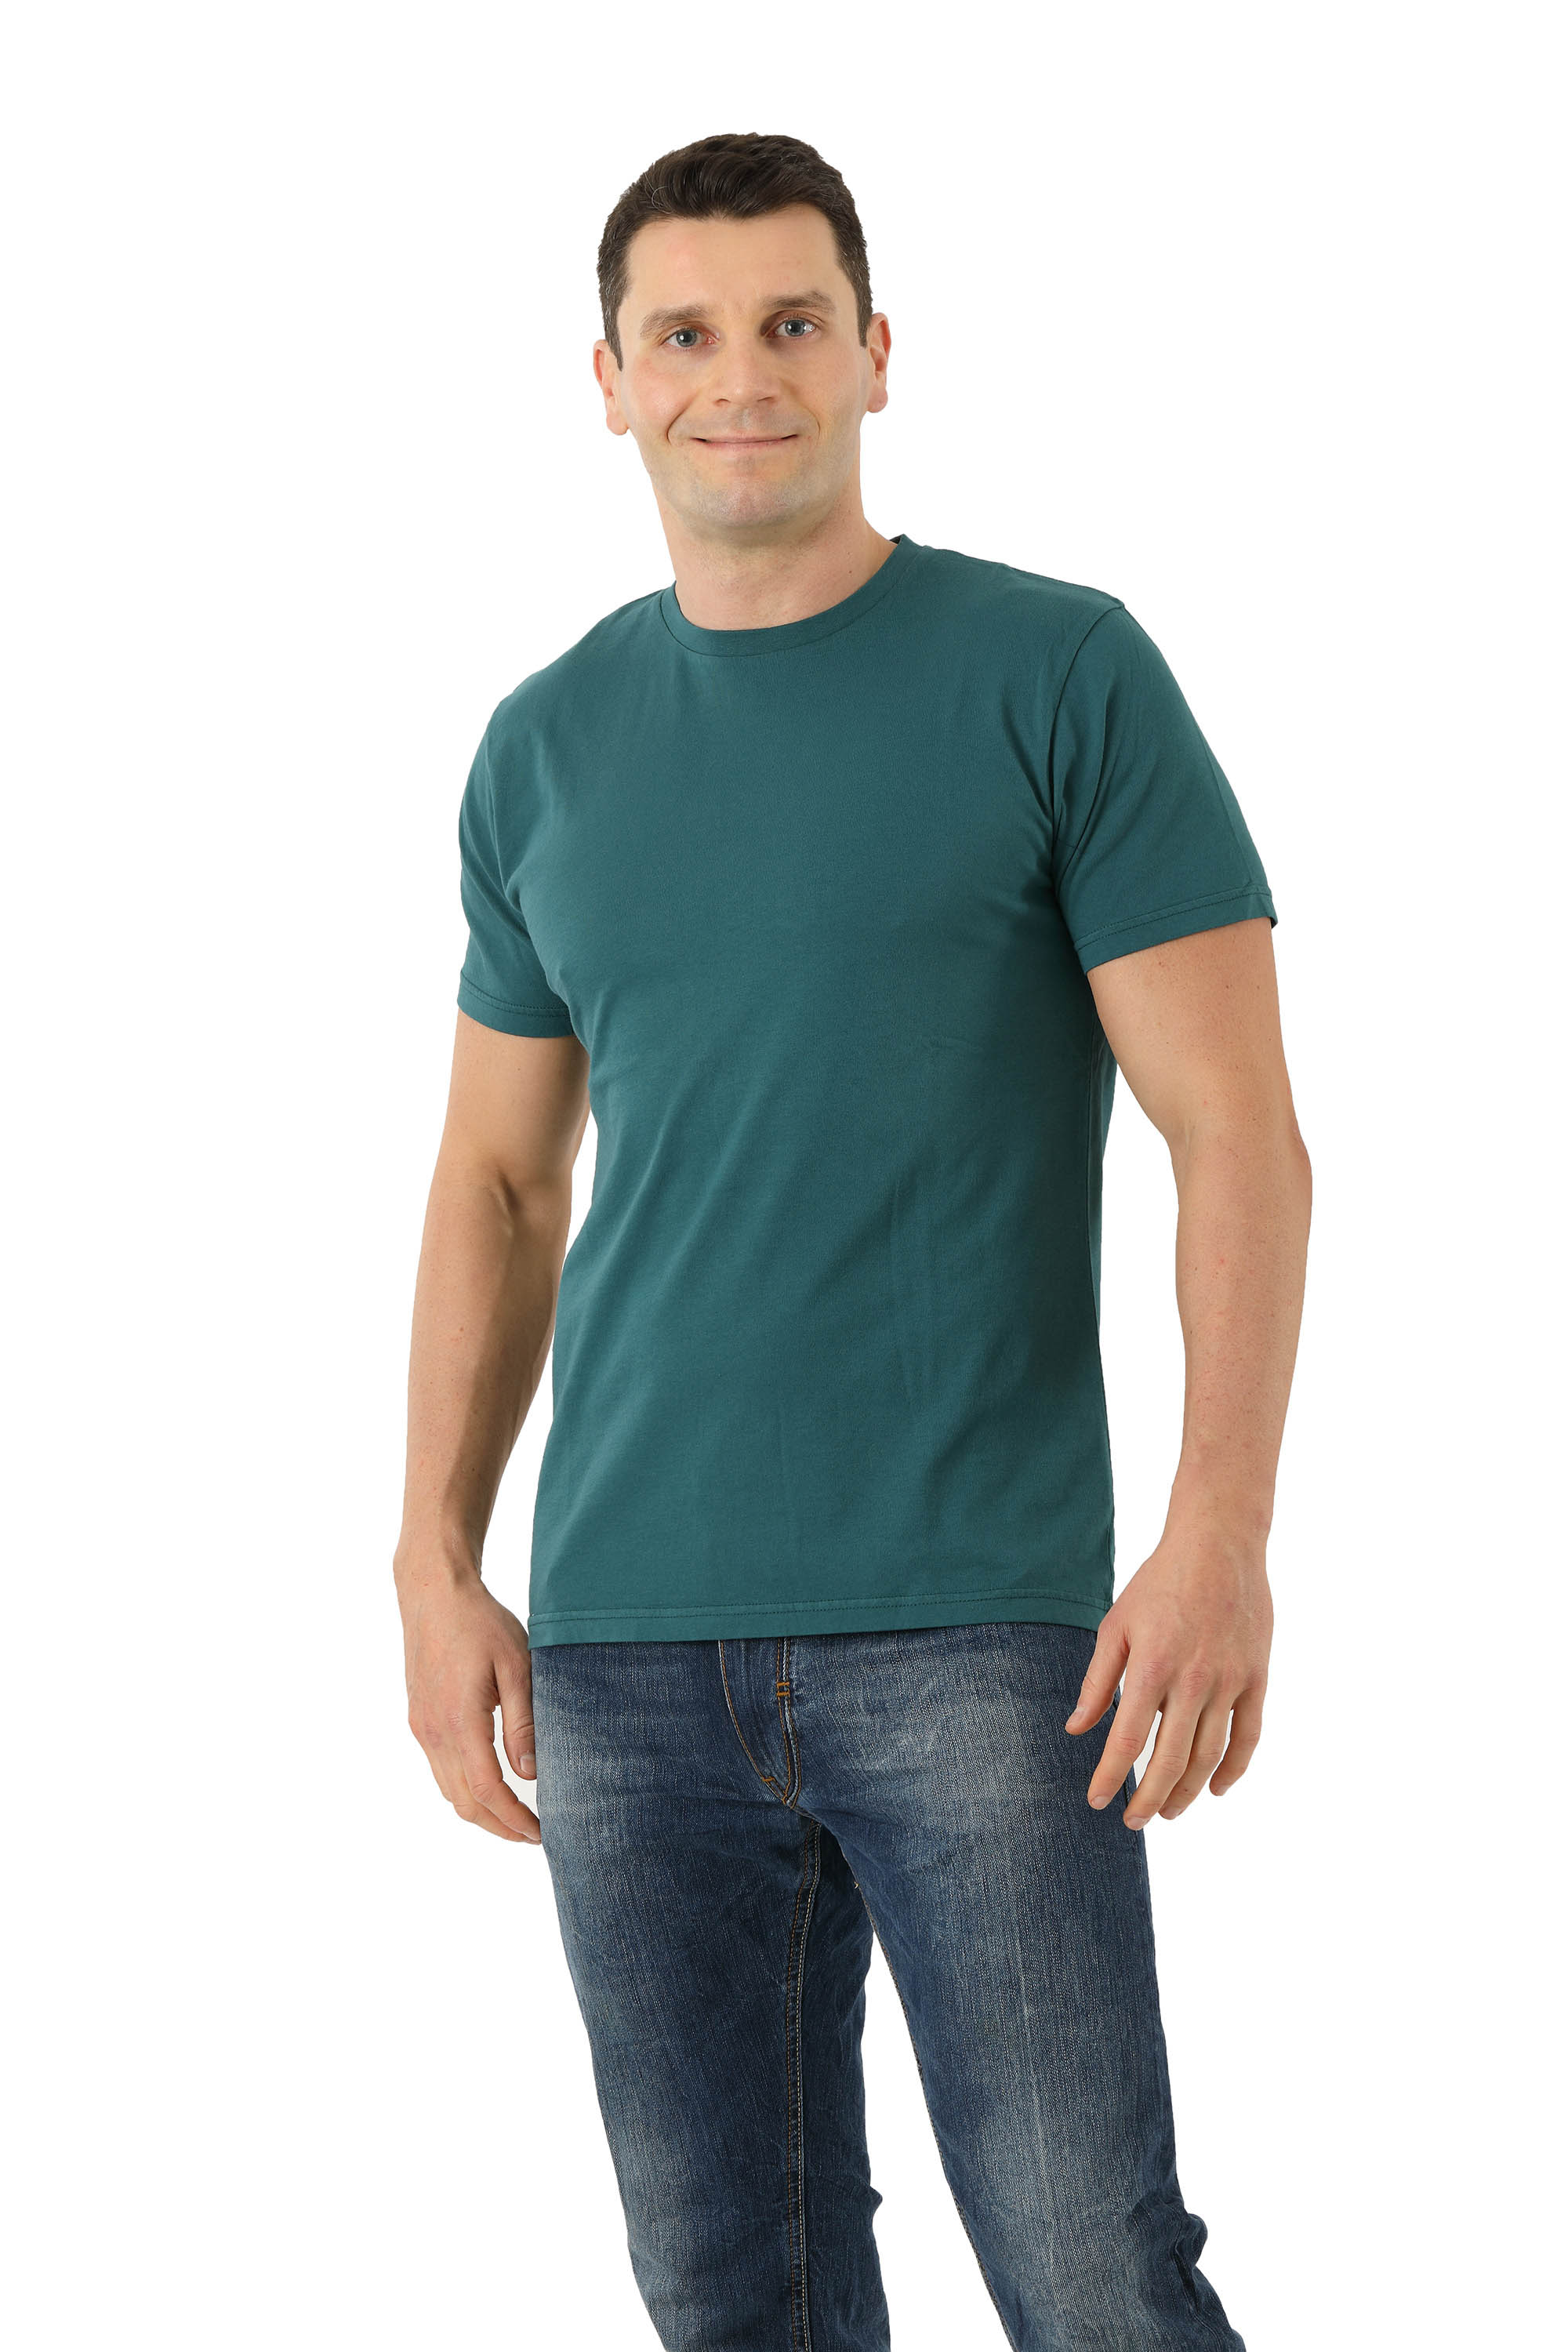 CRIA - T-shirt in cotone organico jersey con scollo tondo, colore cammello